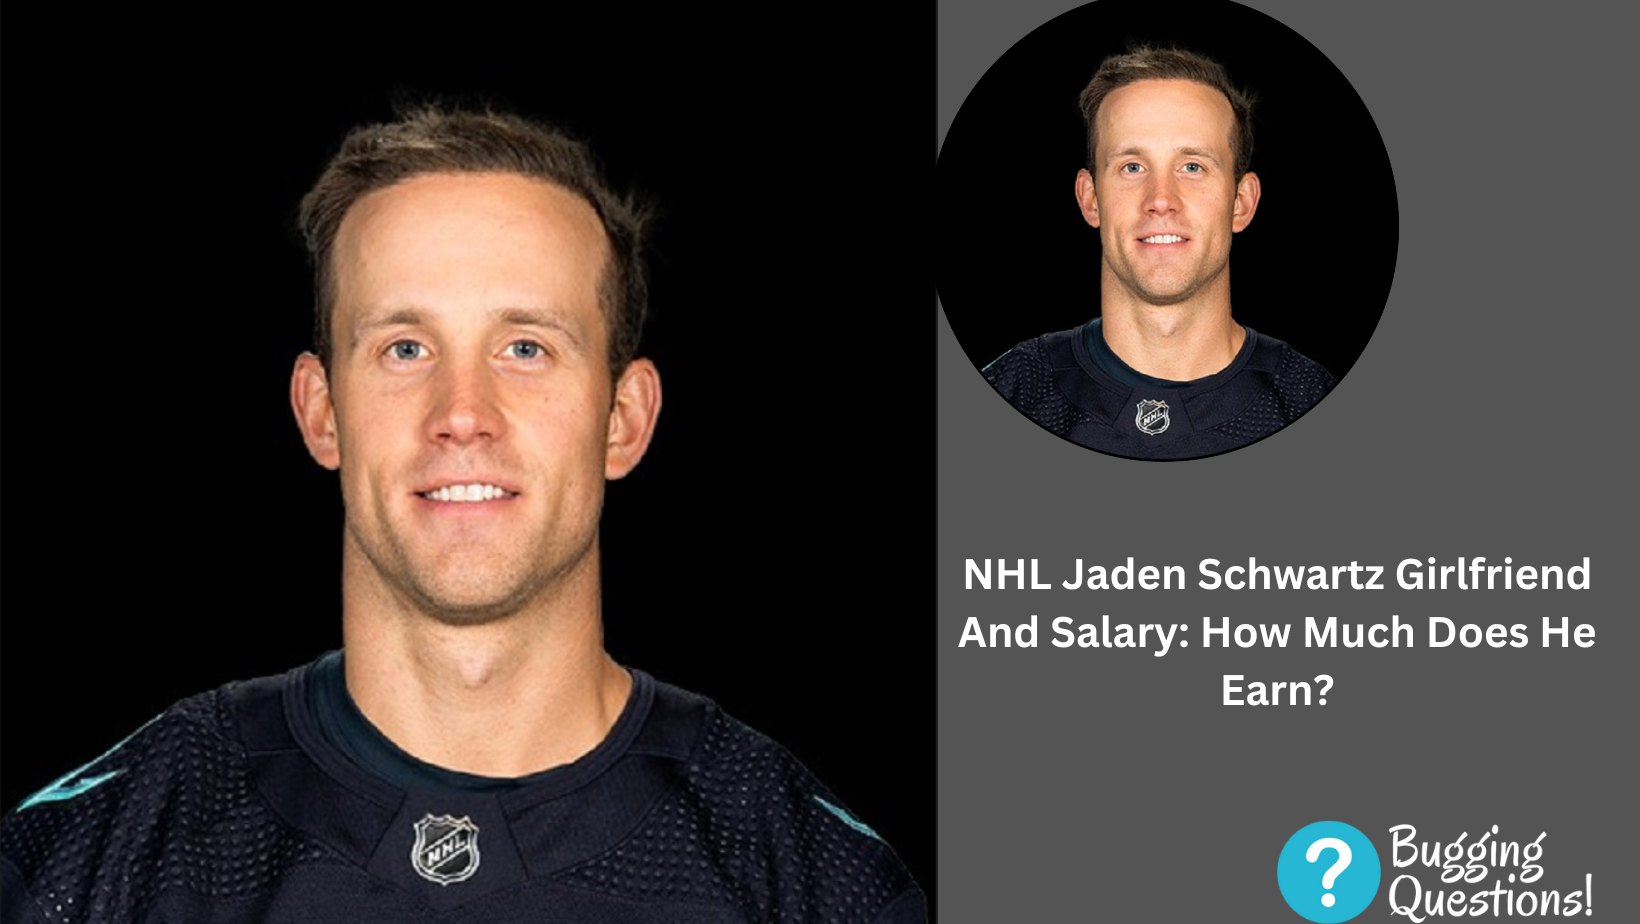 NHL Jaden Schwartz Girlfriend And Salary